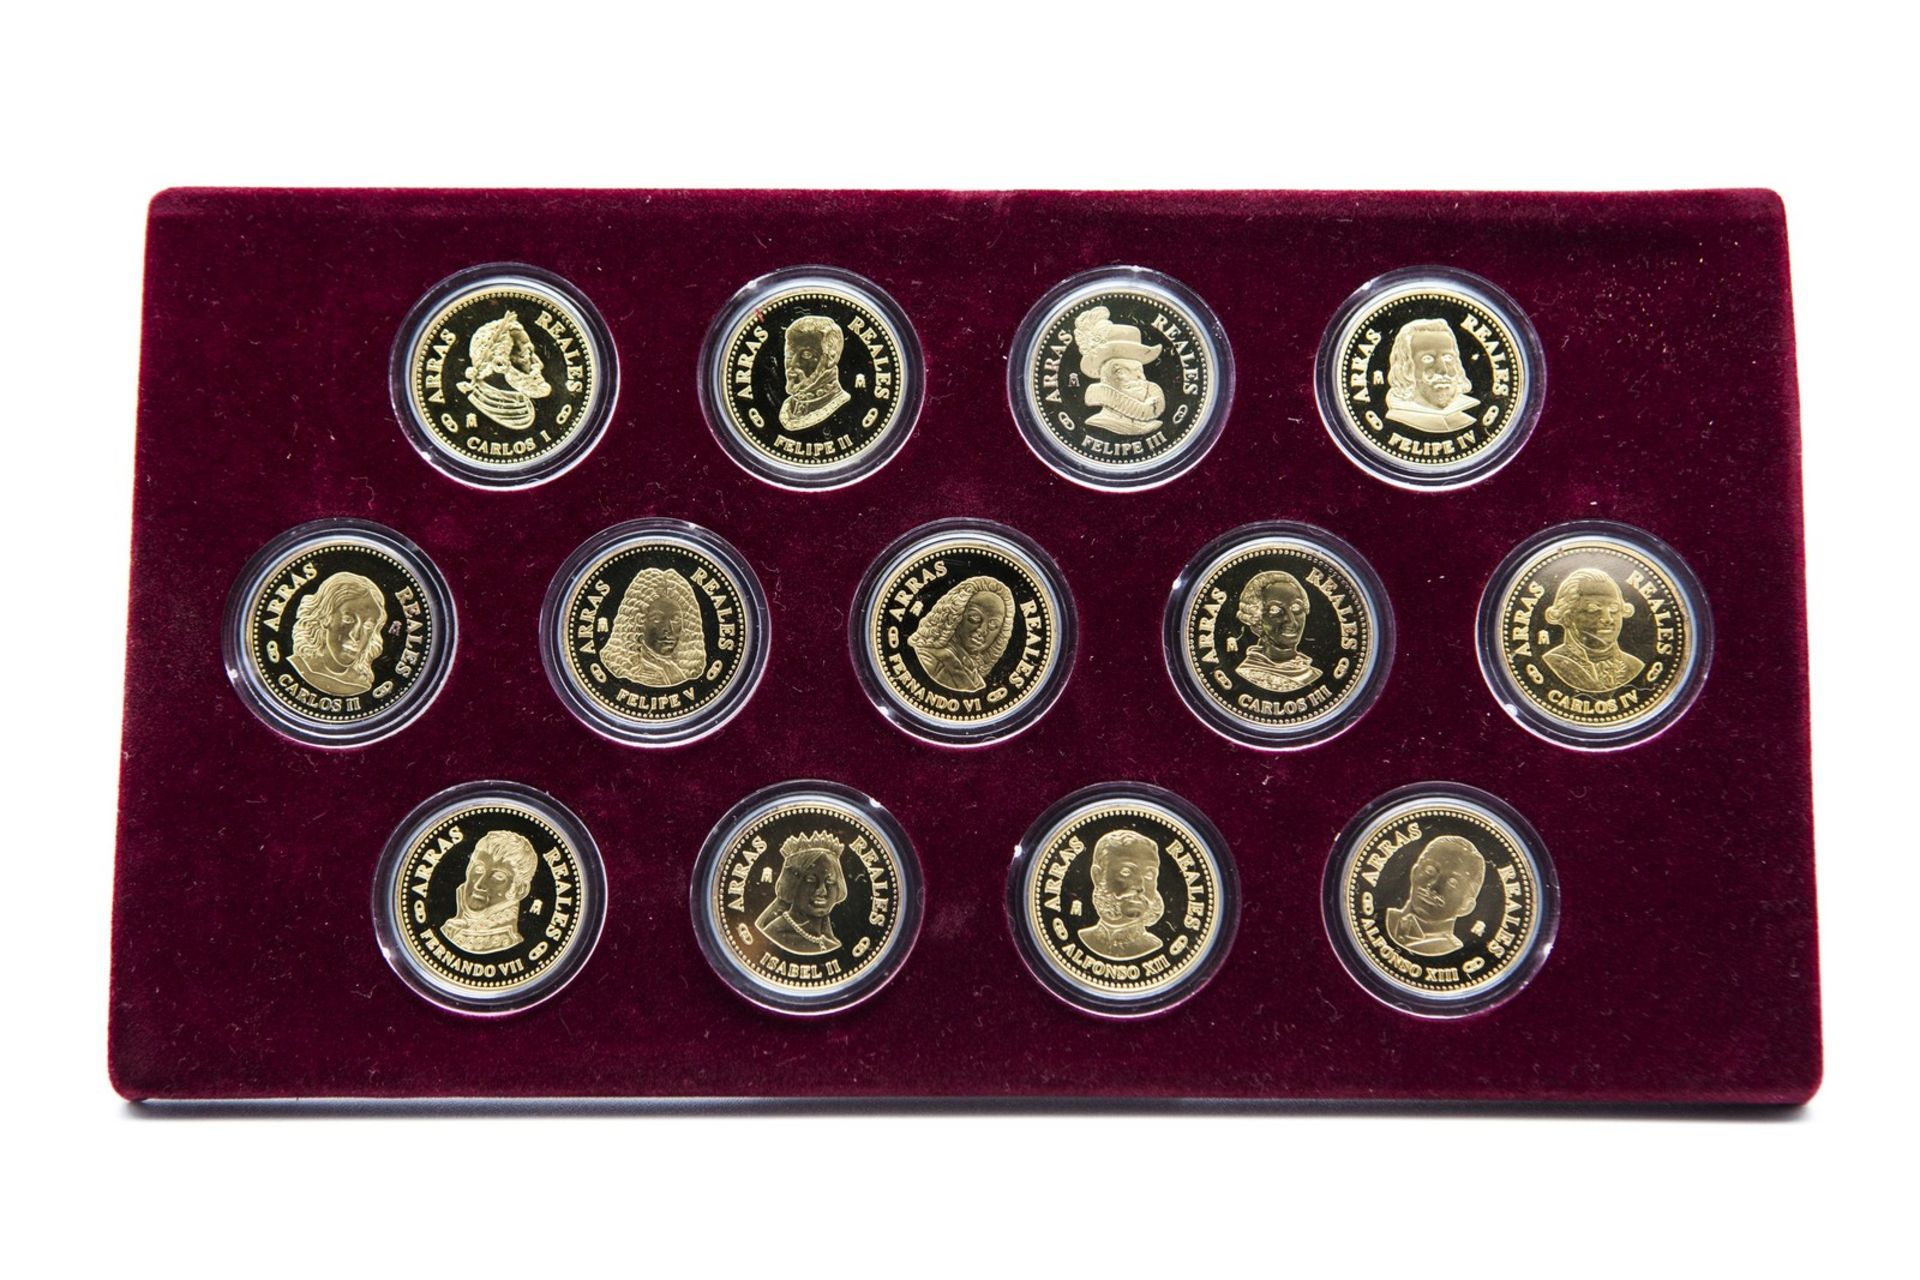 COLLECTION OF COINS, 20TH CENTURY "Arras Reales", compuesta de cinco arras con las efigies de los